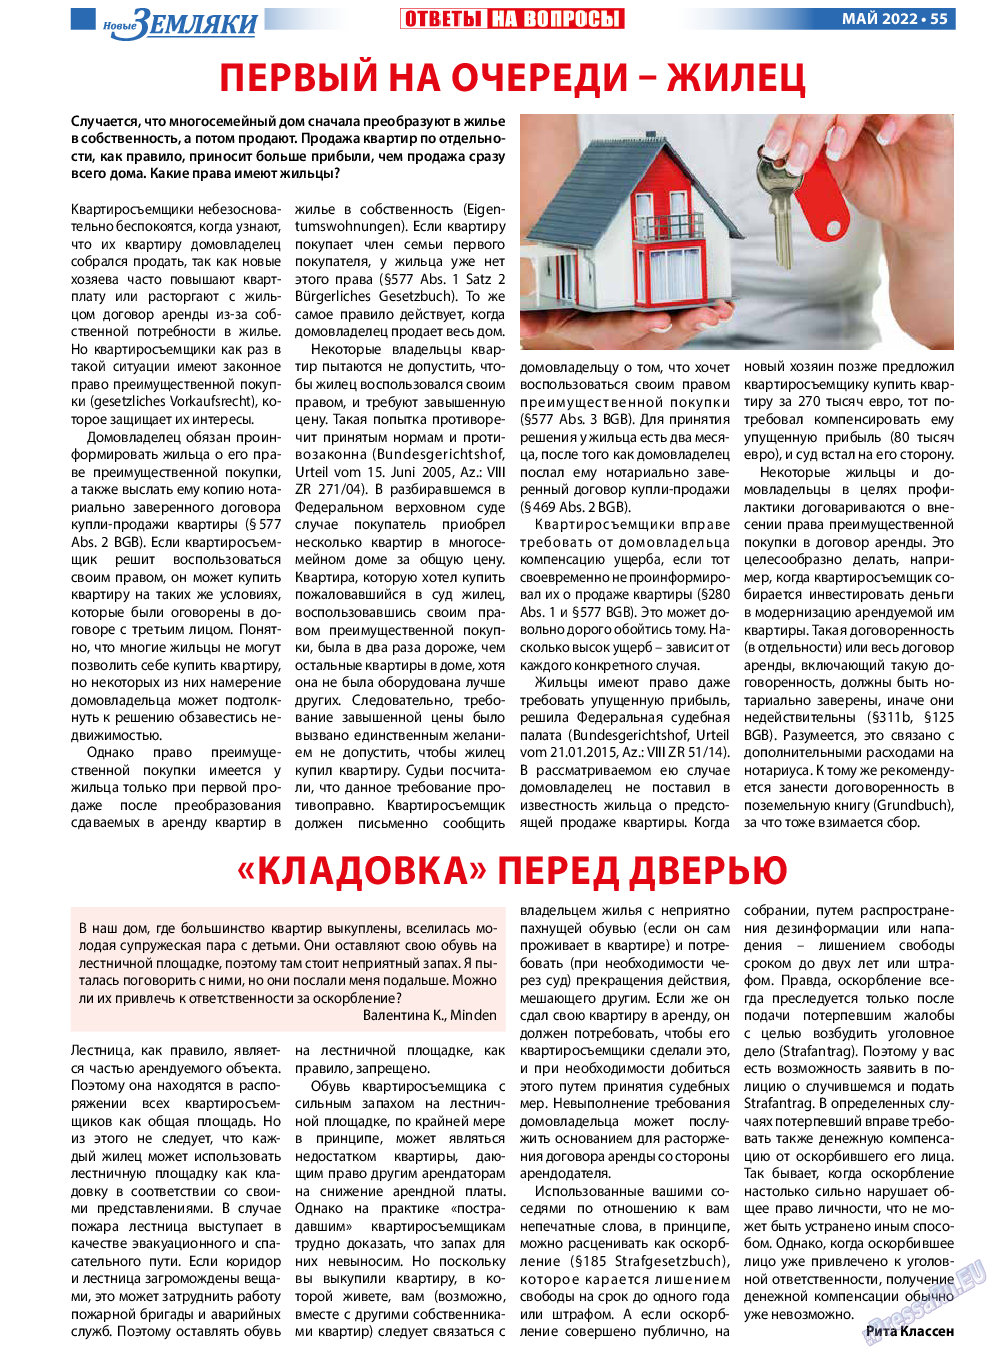 Новые Земляки, газета. 2022 №5 стр.55